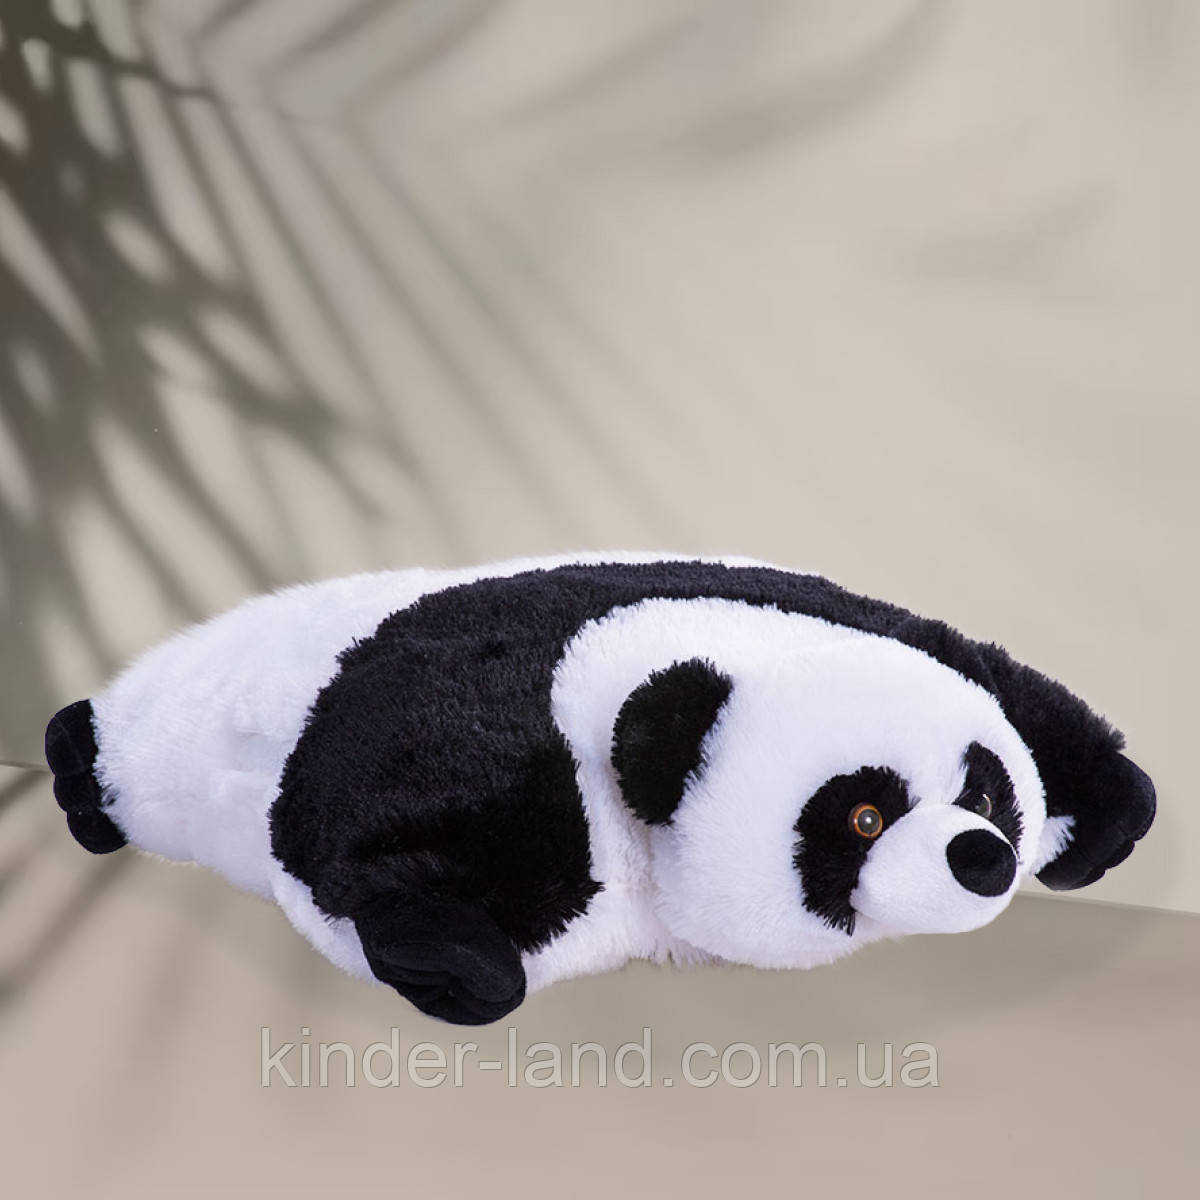 Дитяча Подушка складушка Панда, 48 см